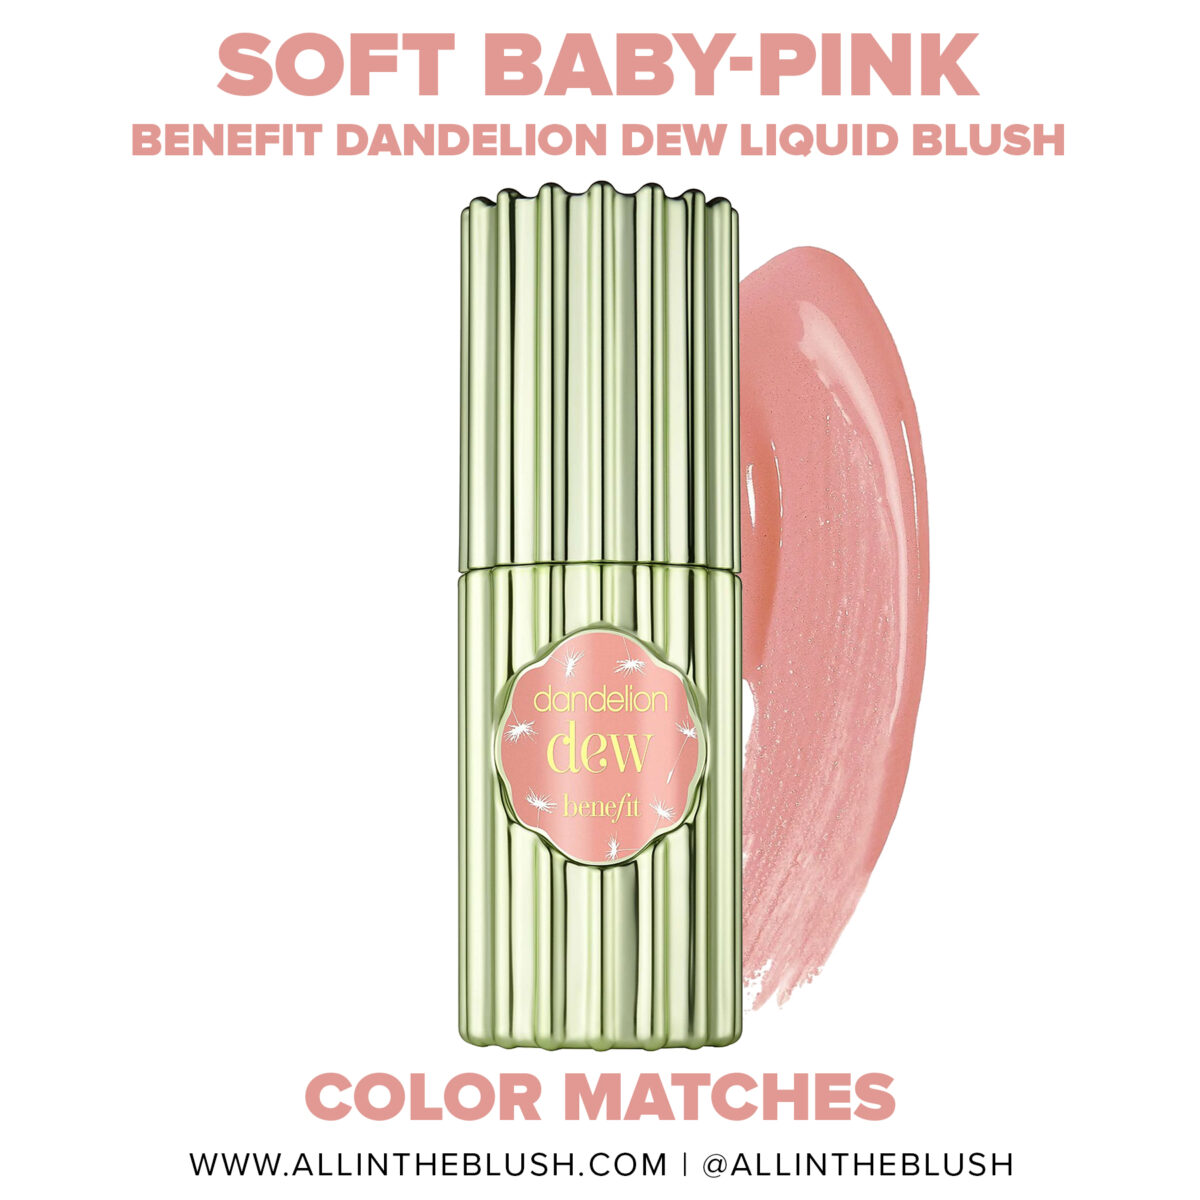 Benefit Dandelion Dew Baby-Pink Liquid Blush Dupes